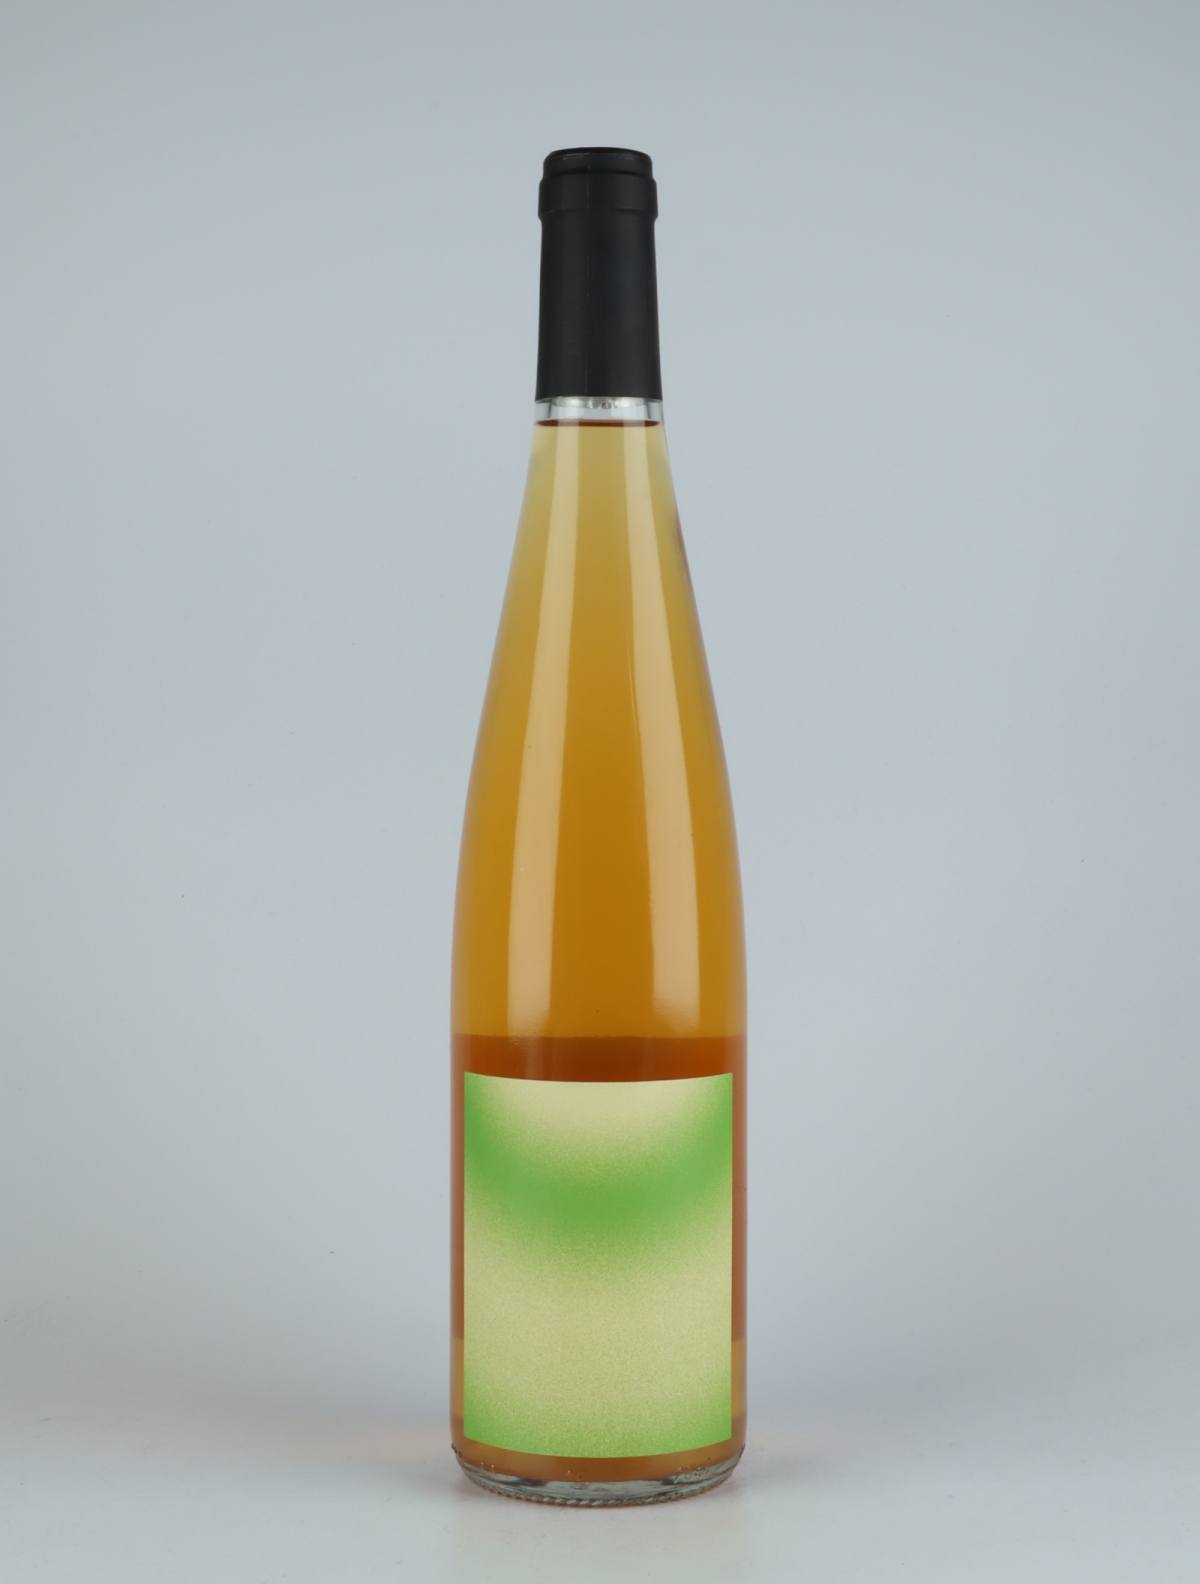 En flaske 2020 L’Alliance Orange vin fra Domaine Goepp, Alsace i Frankrig